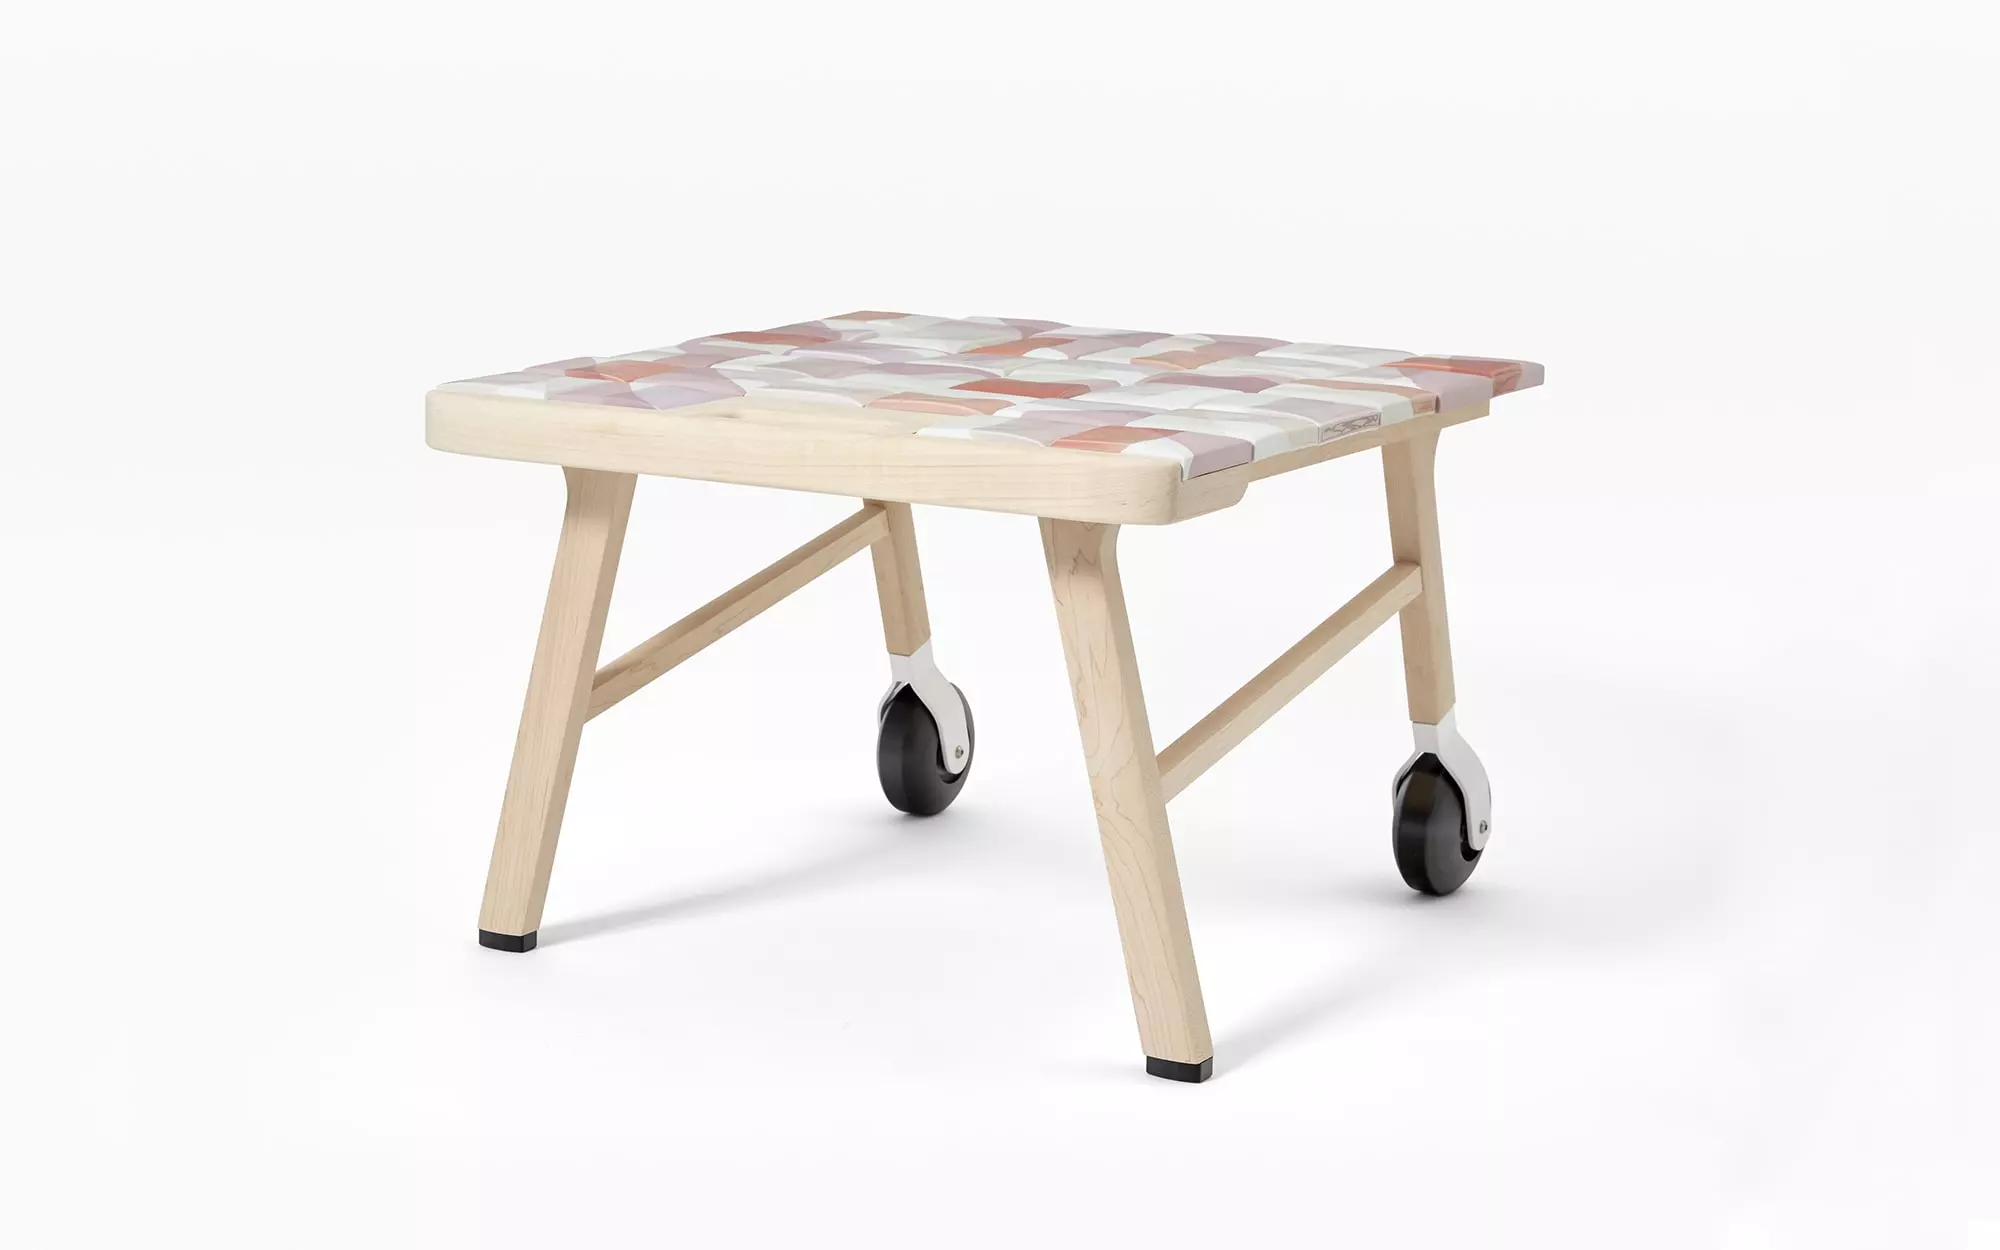 Tiles side table - Hella Jongerius - Chair - Galerie kreo